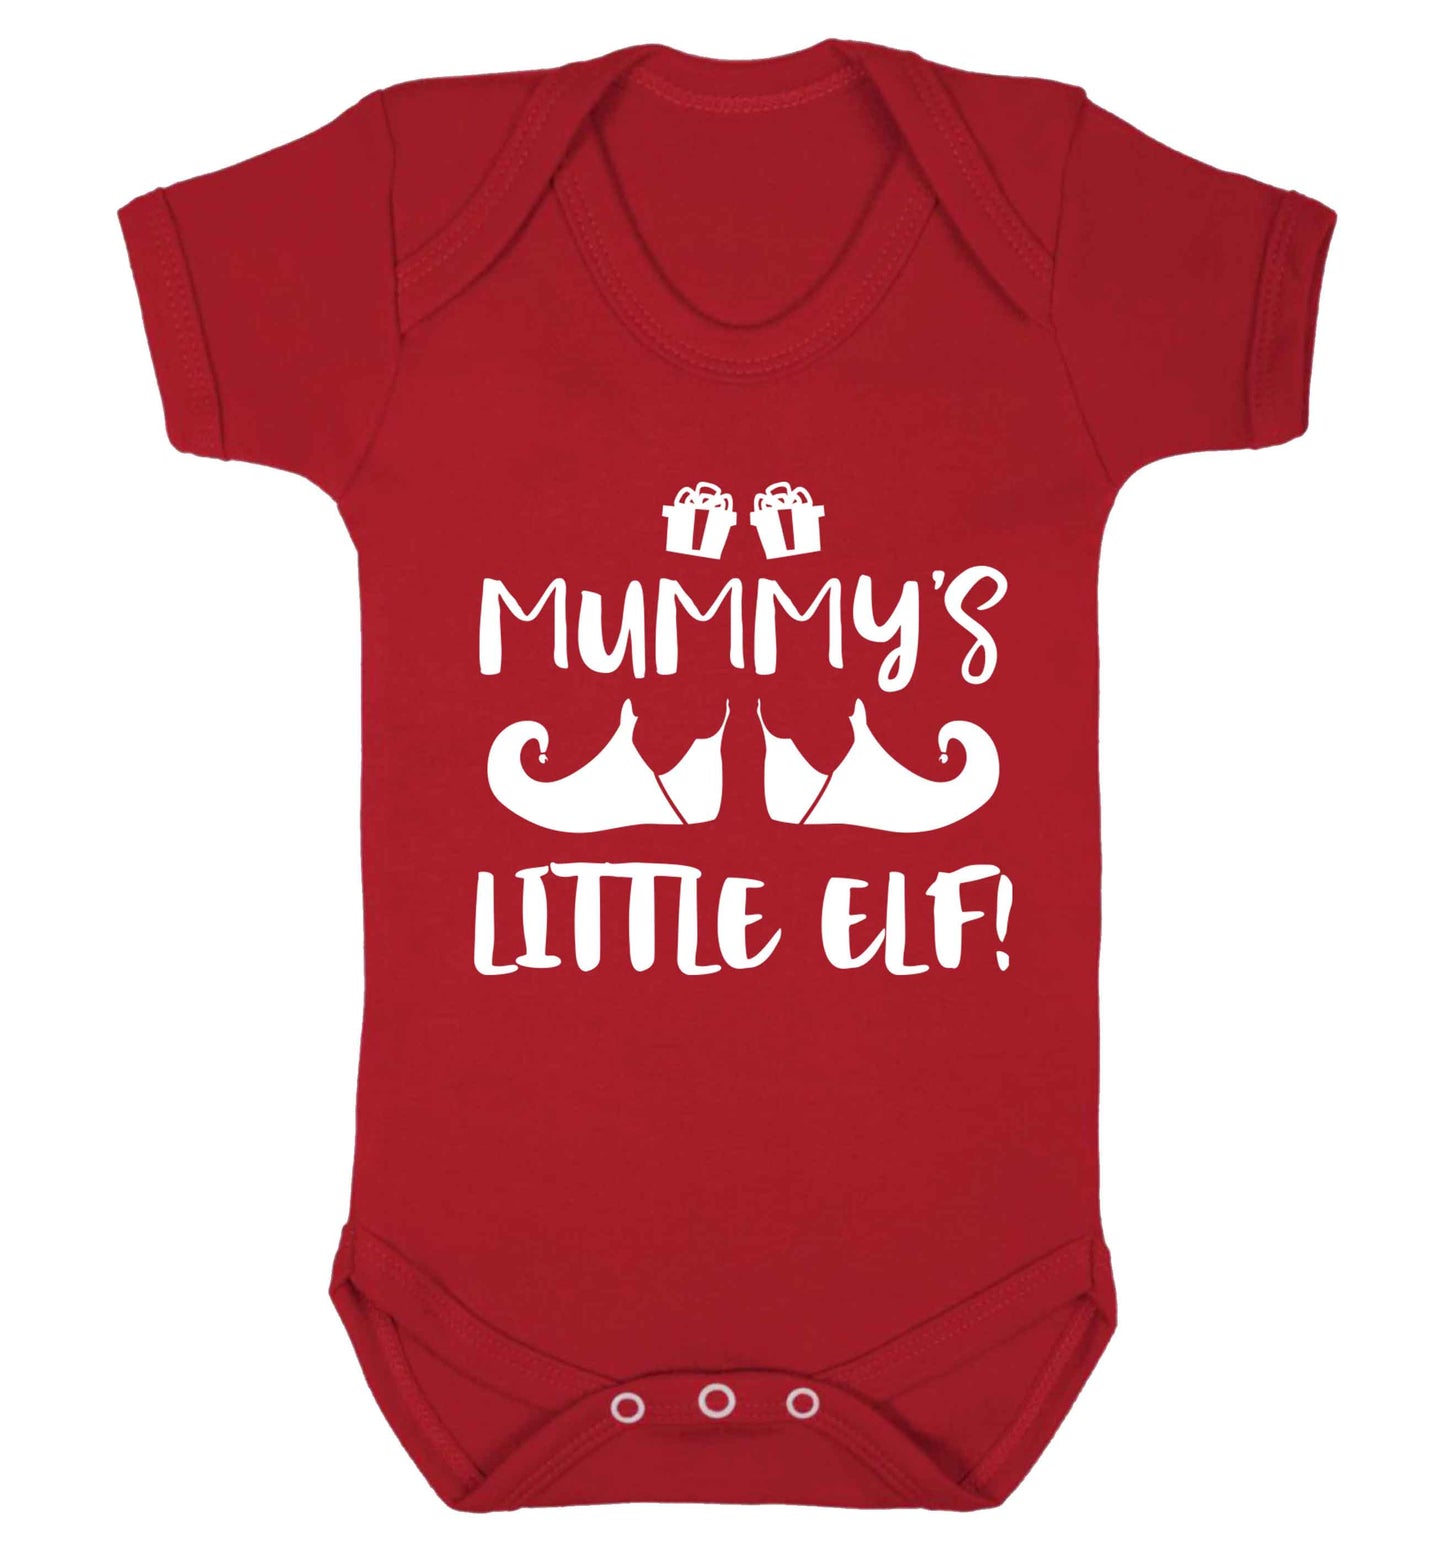 Mummy's little elf Baby Vest red 18-24 months